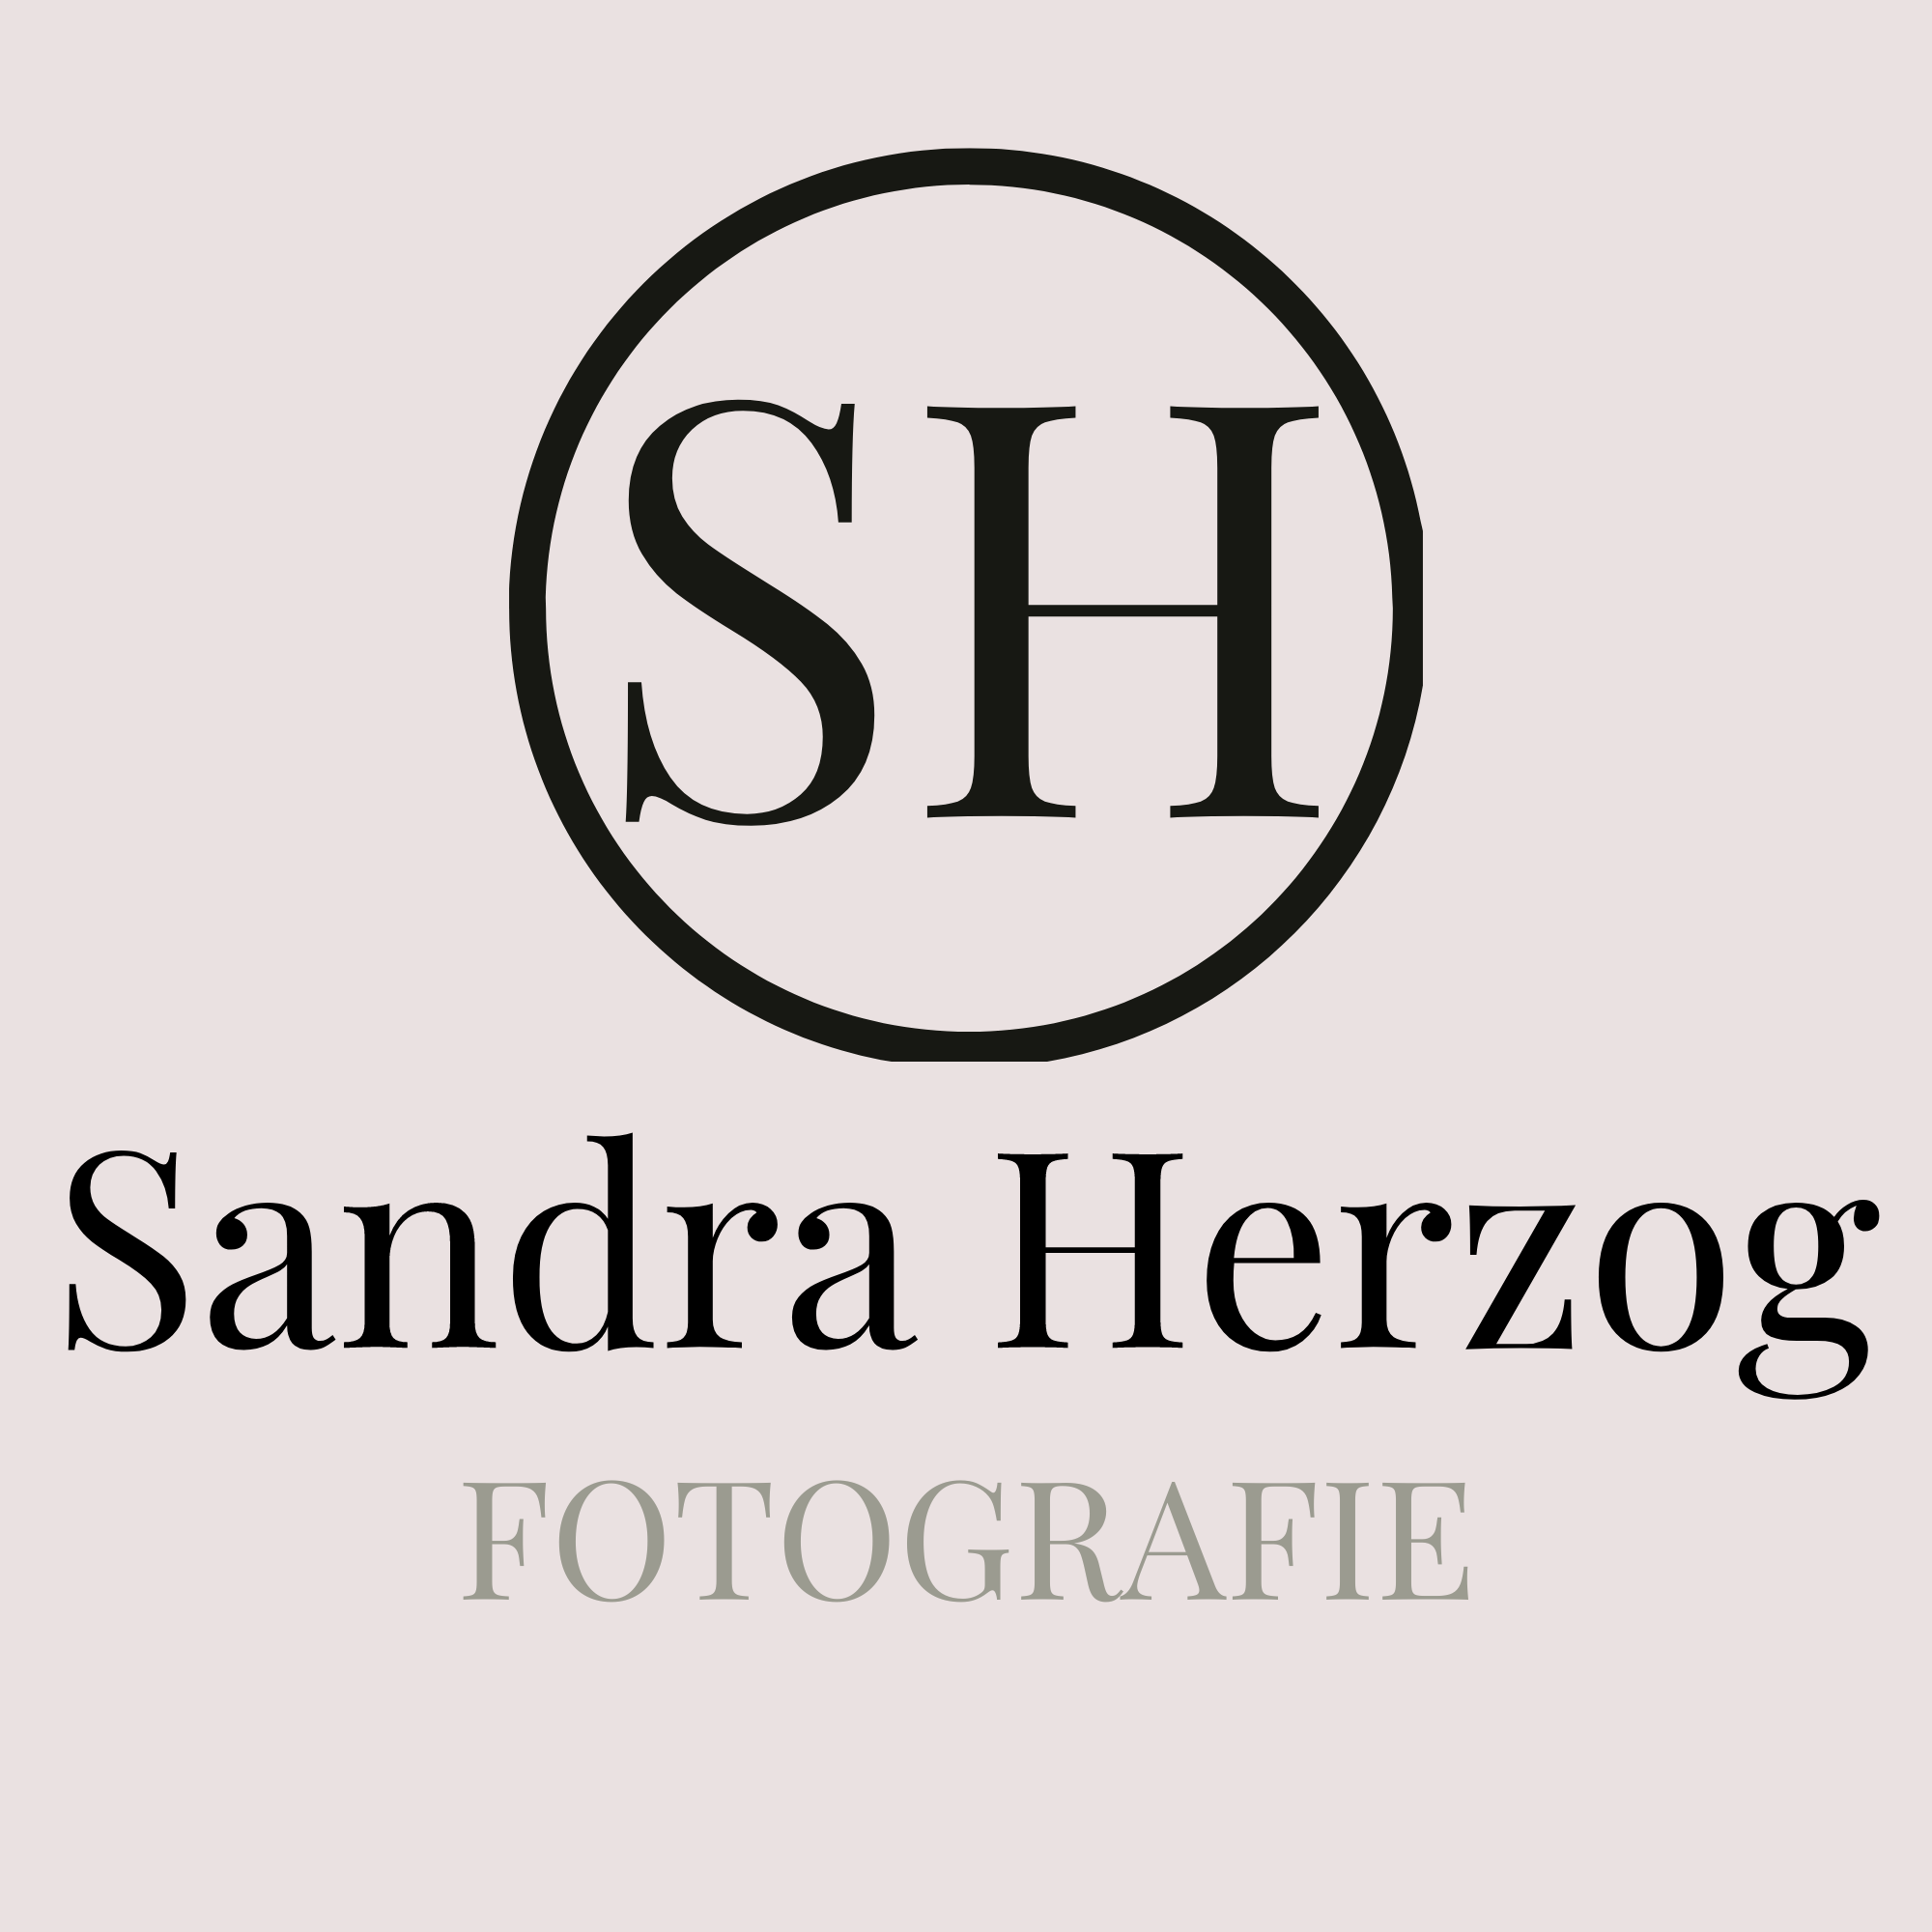 Sandra Herzog